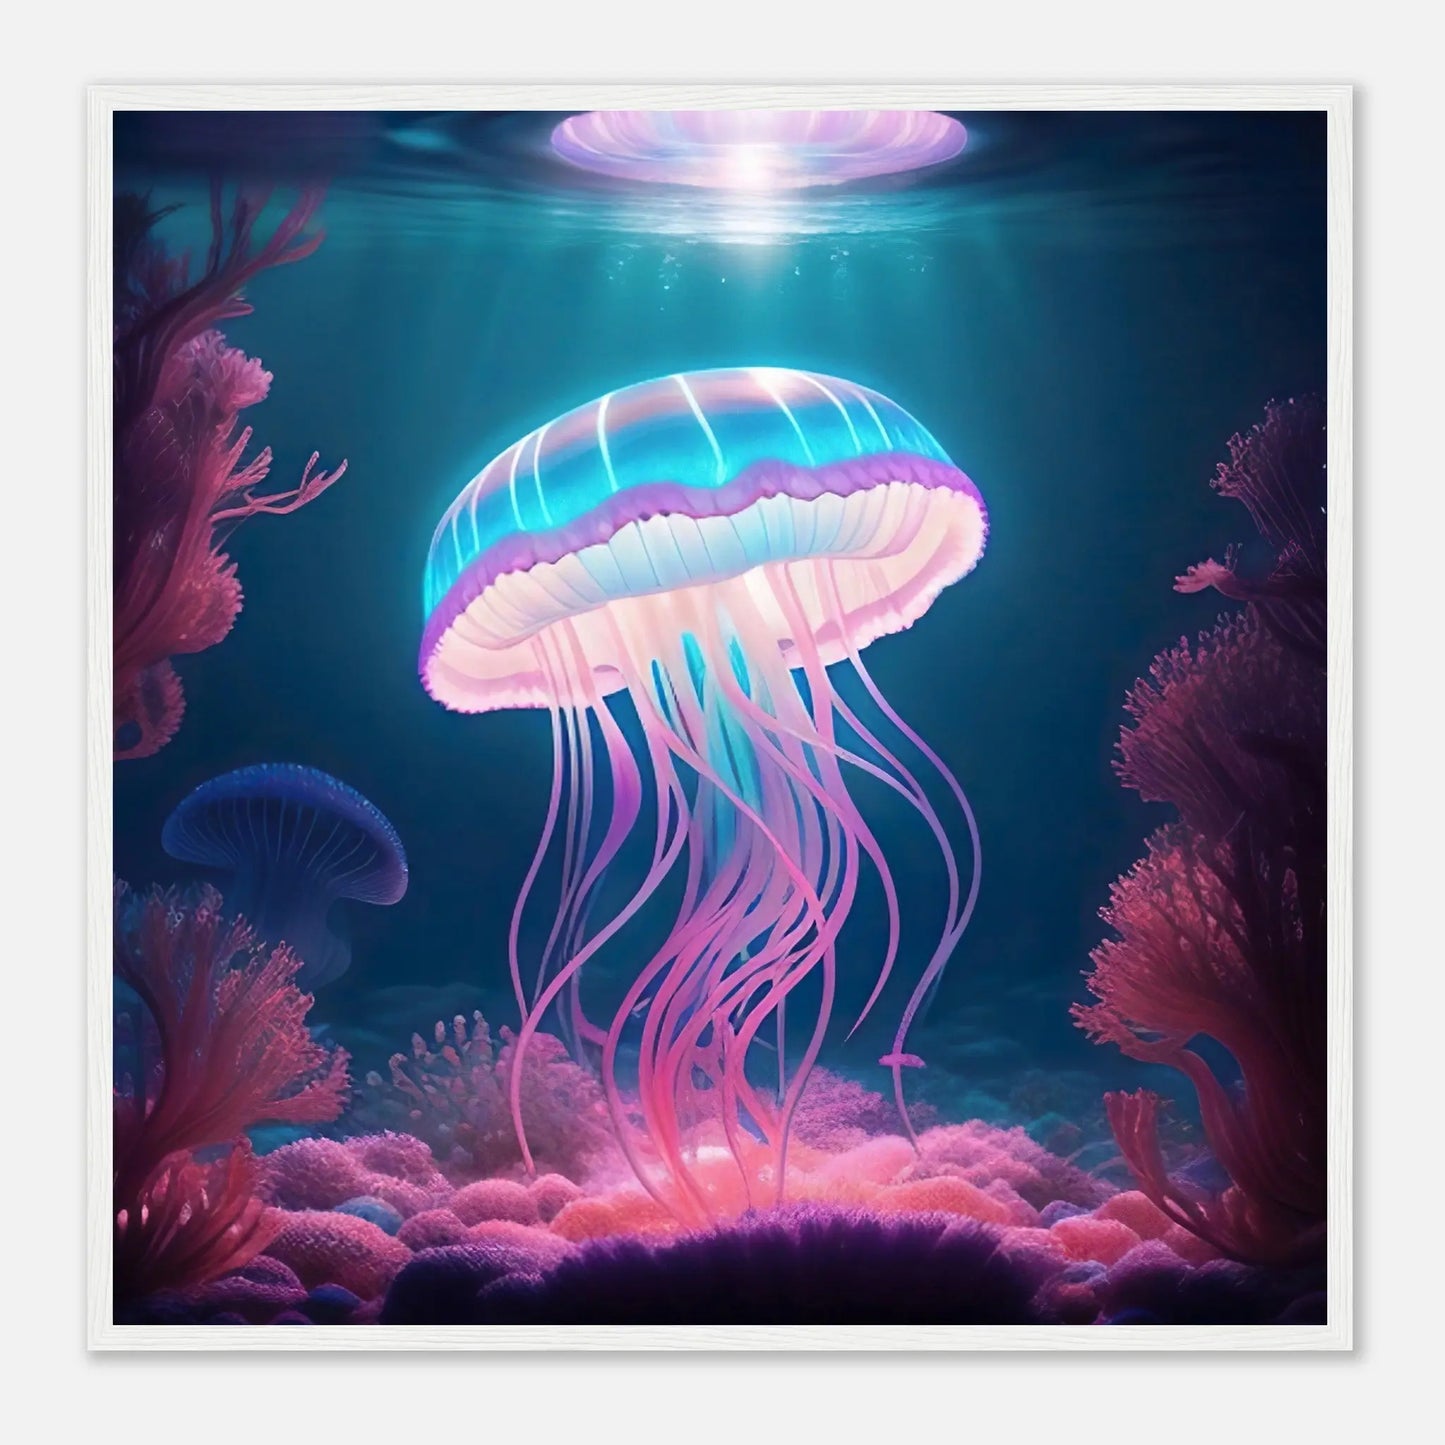 Gerahmtes Premium-Poster - Qualle - Digitaler Stil, KI-Kunst - RolConArt, Unterwasserlandschaften, 70x70-cm-28x28-Weißer-Rahmen